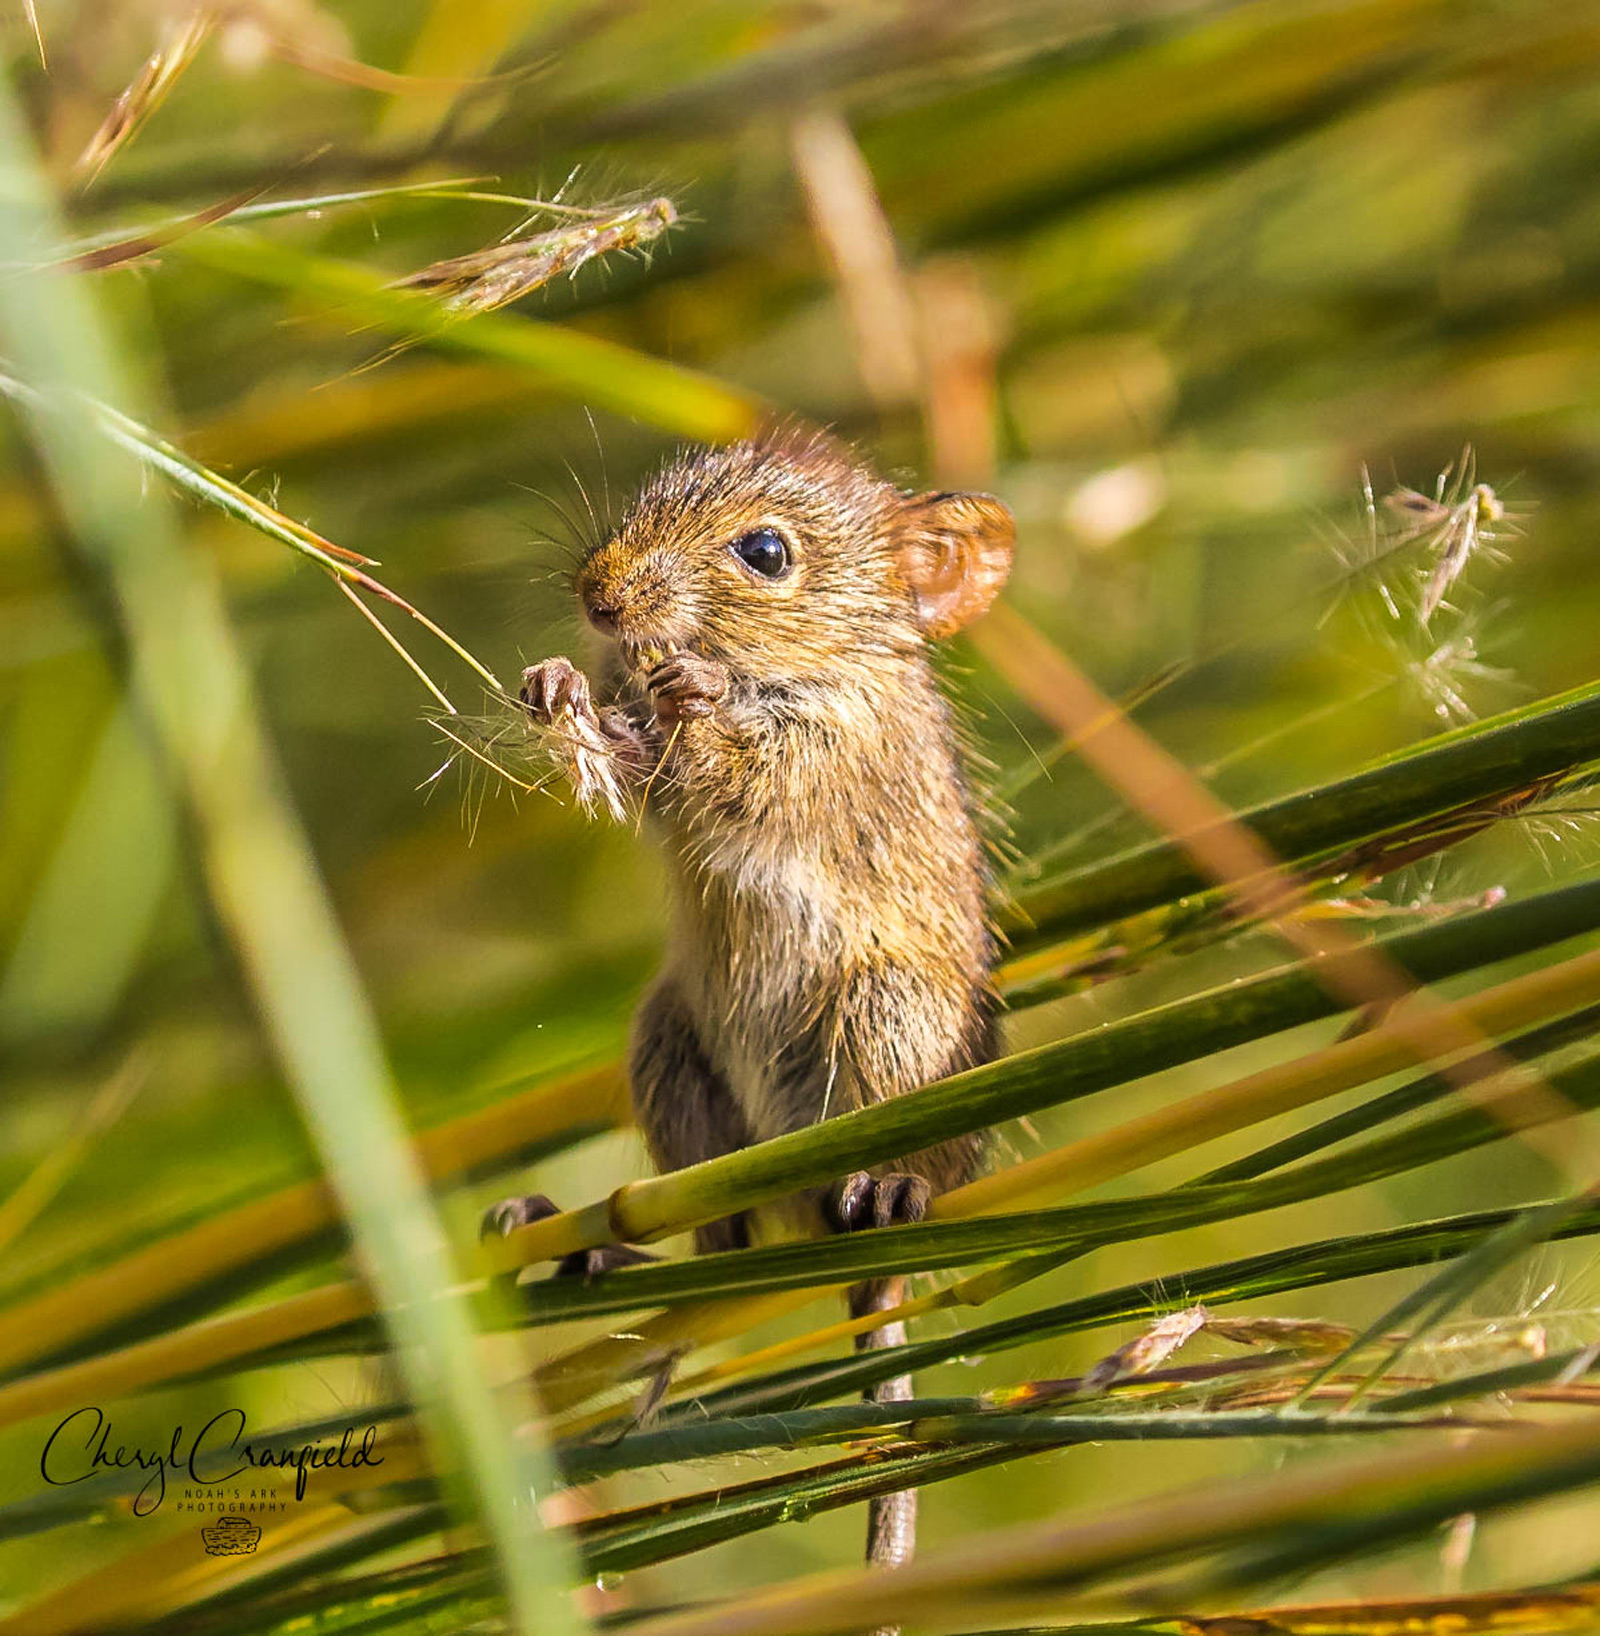 A young mouse feeds on grass seeds. Kirstenbosch Botanical Gardens, Cape Town, South Africa © Cheryl Cranfield